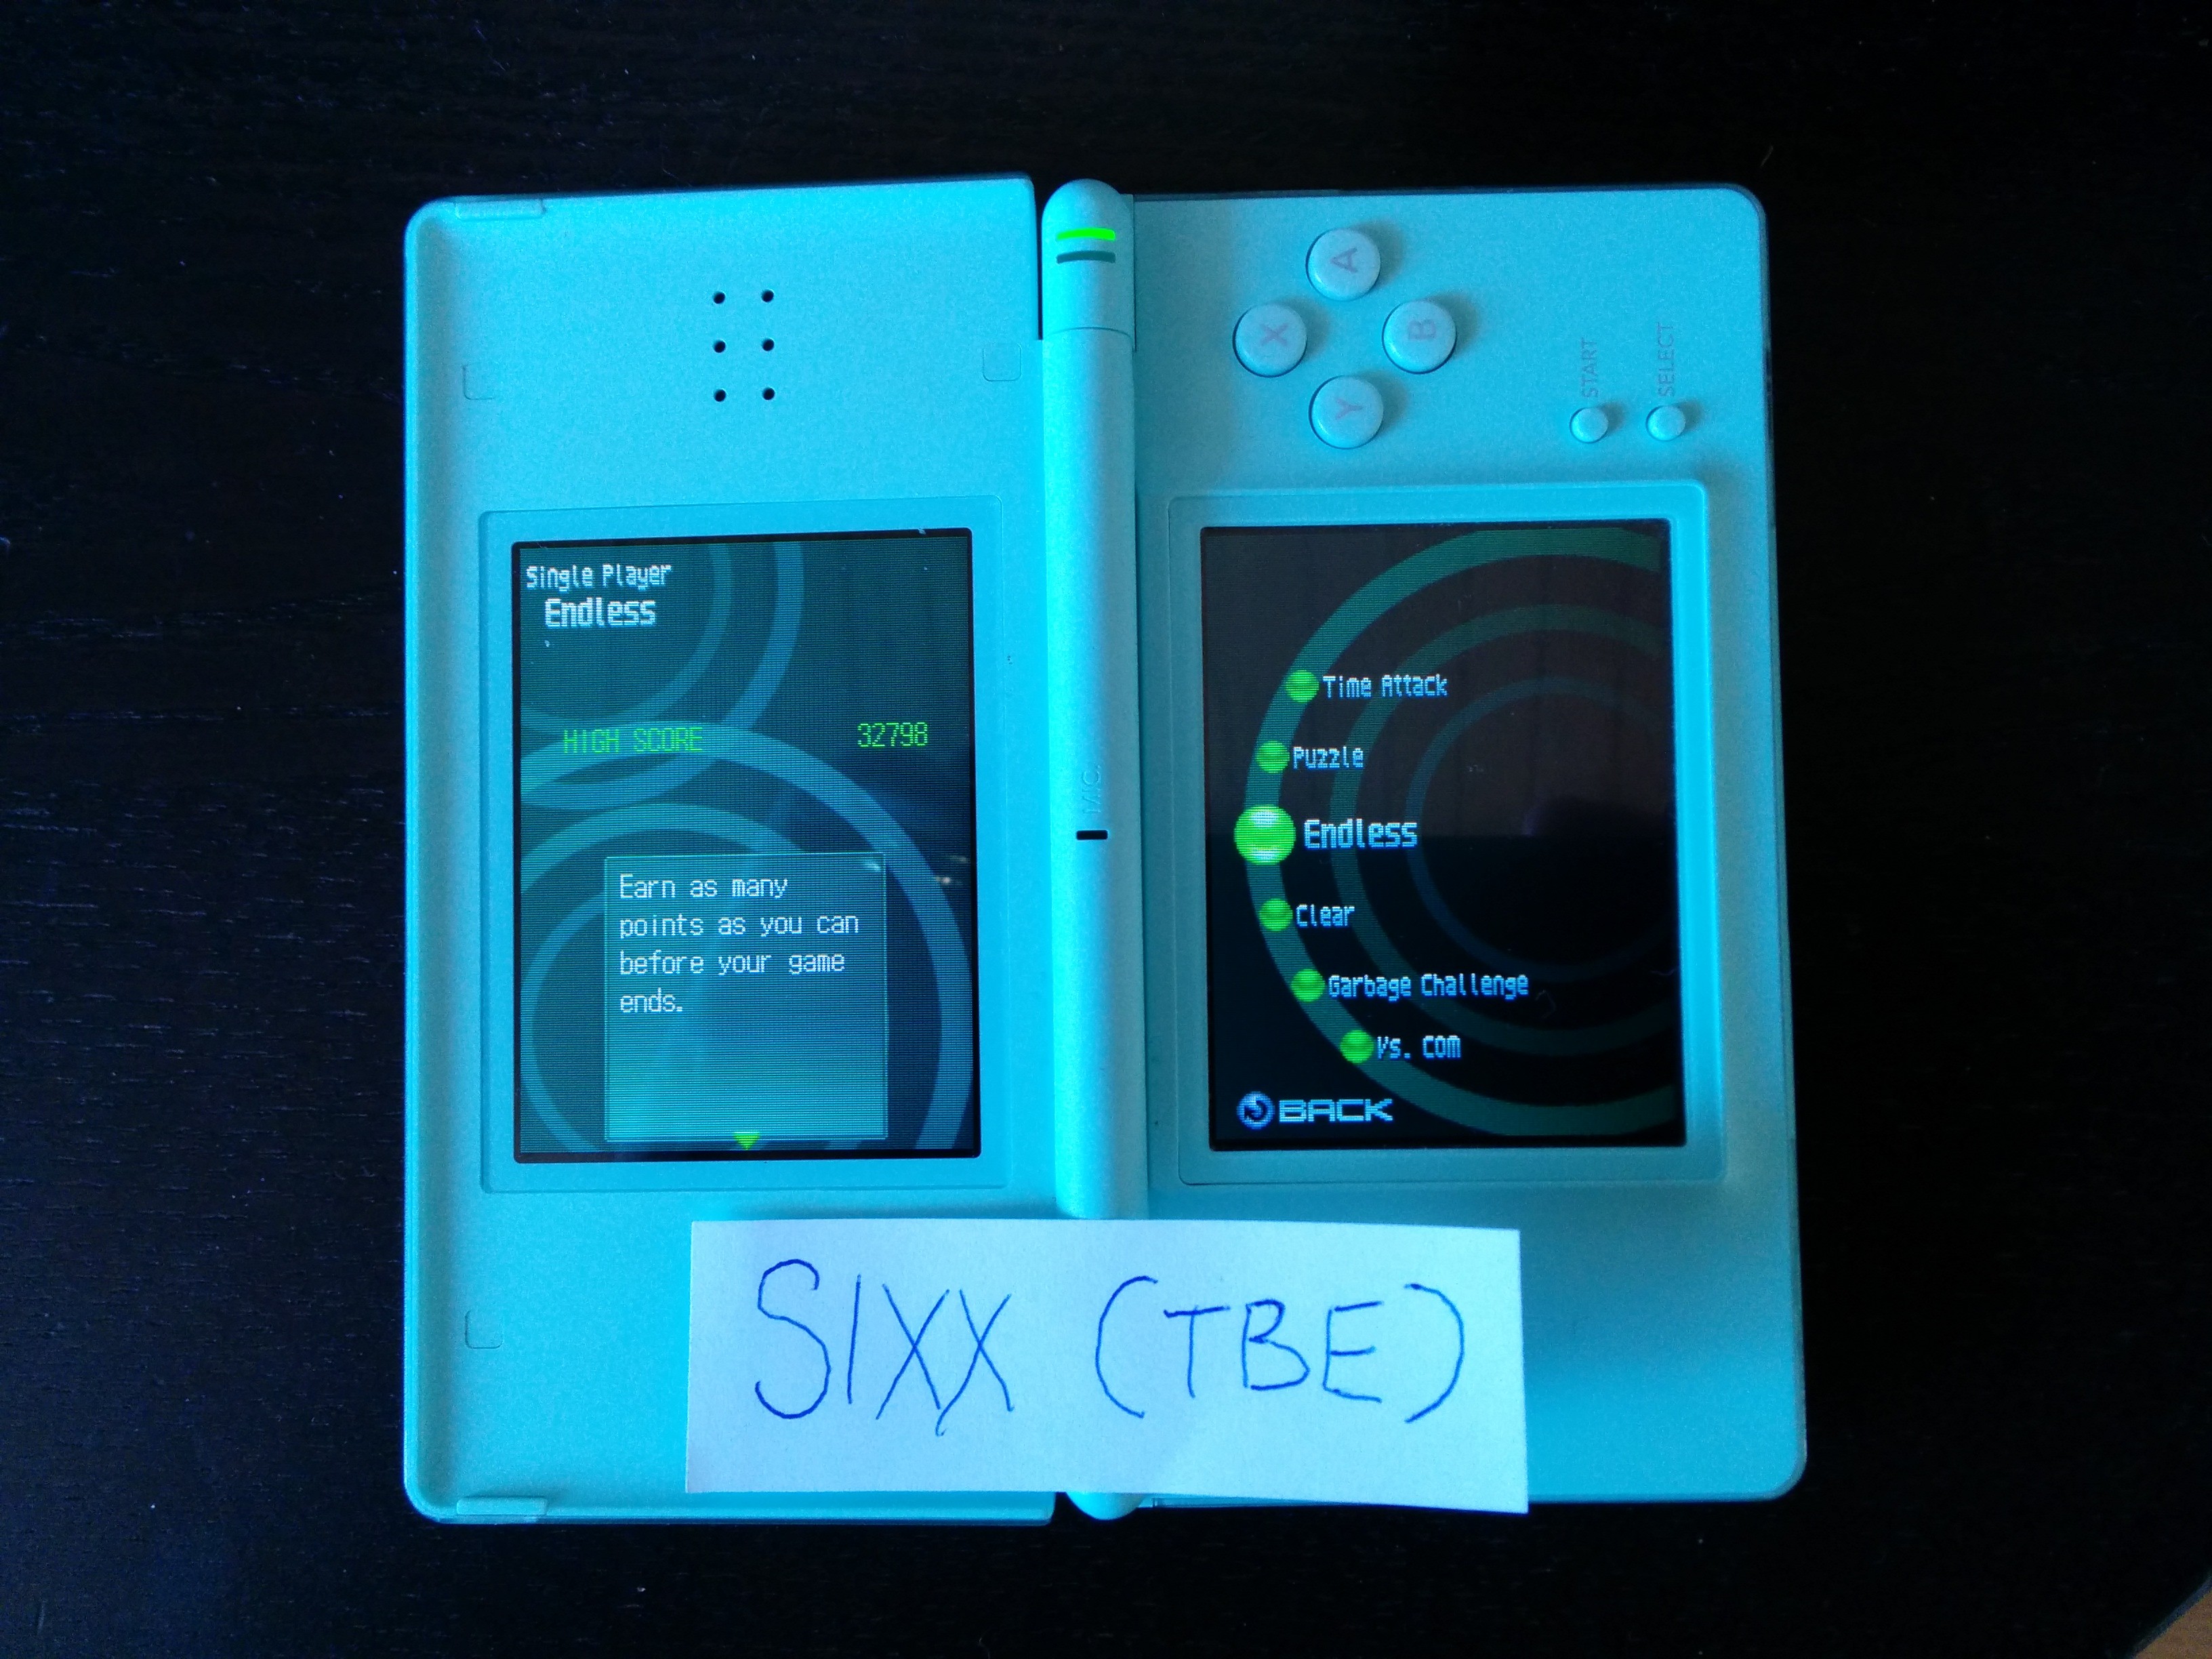 Sixx: Puzzle League DS [Endless/Normal] (Nintendo DS) 32,798 points on 2014-04-17 01:31:28